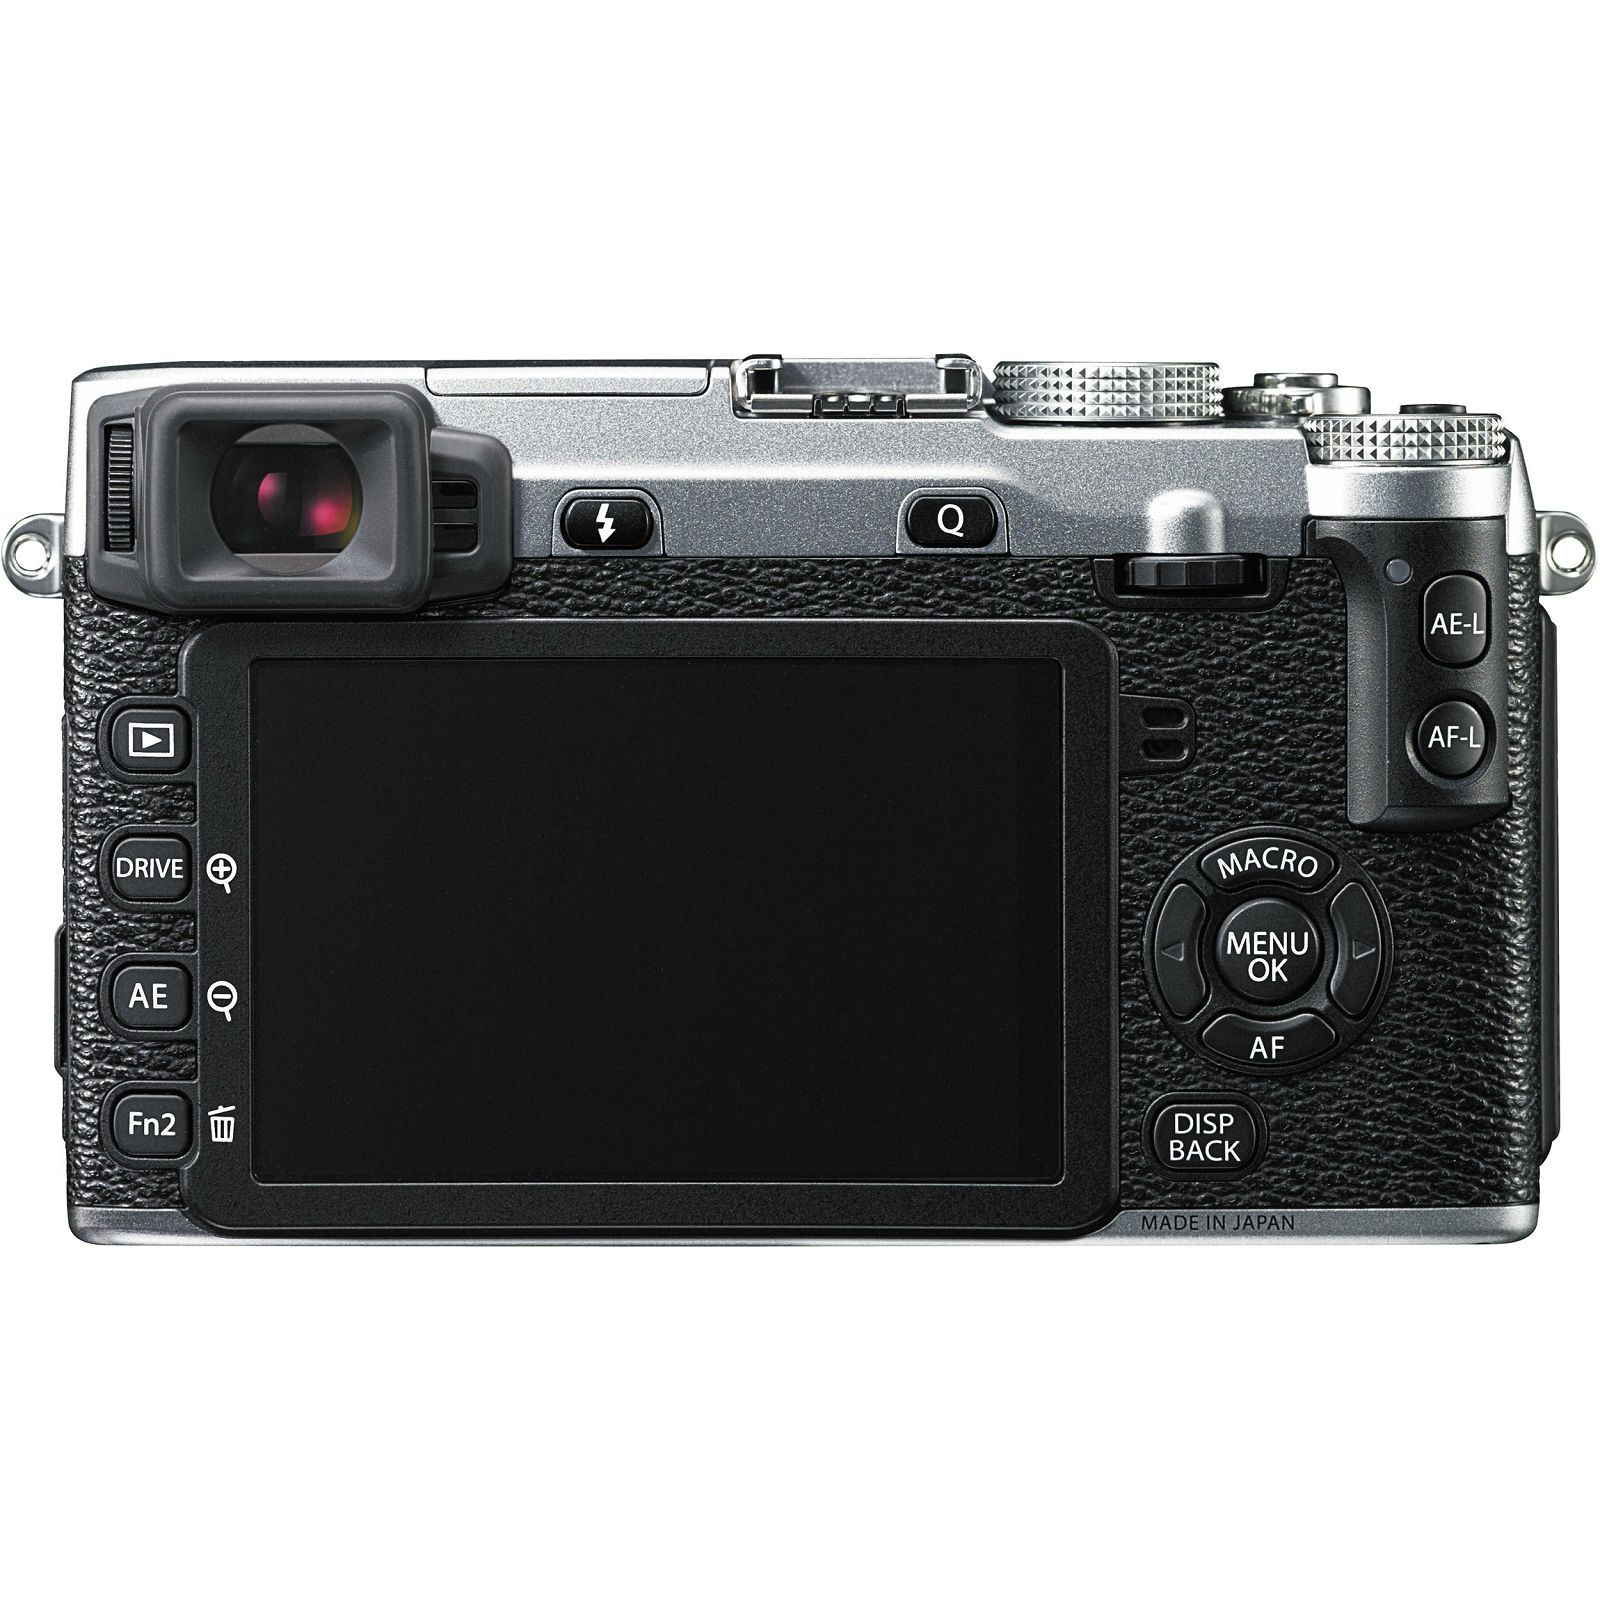 Fujifilm X-E2 Body Silver srebreni Digitalni fotoaparat Mirrorless camera Fuji Finepix XE2